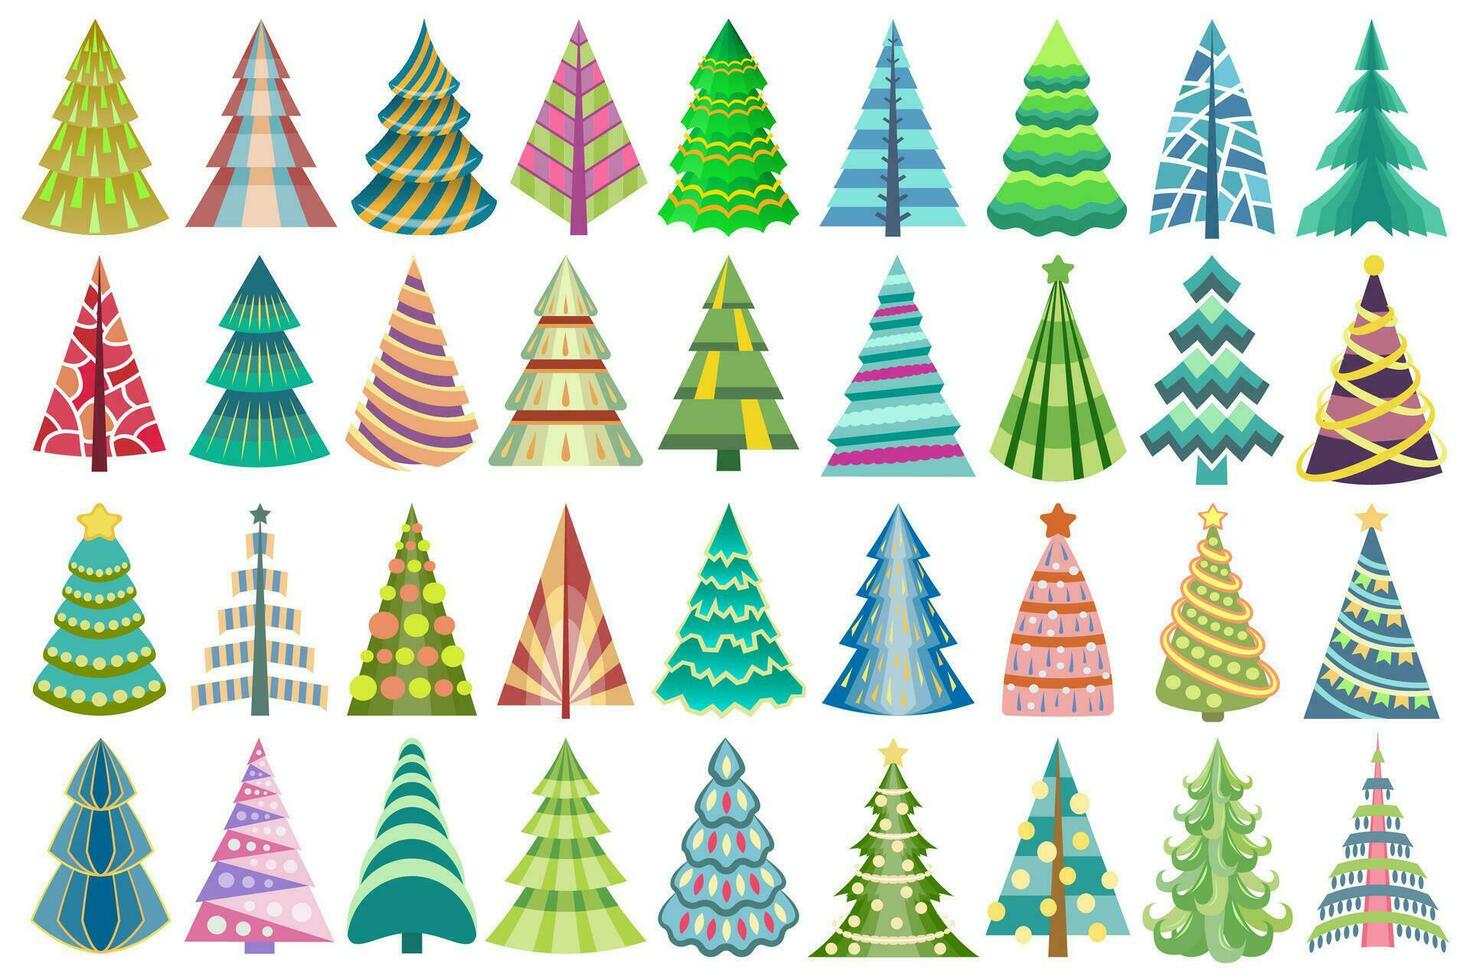 abstrakt stilisiert dekorativ Weihnachten Baum Satz. bunt, dekoriert Tannen zum Neu Jahr Fall. Vektor, künstlerisch geometrisch Weihnachten Baum Entwürfe. vektor